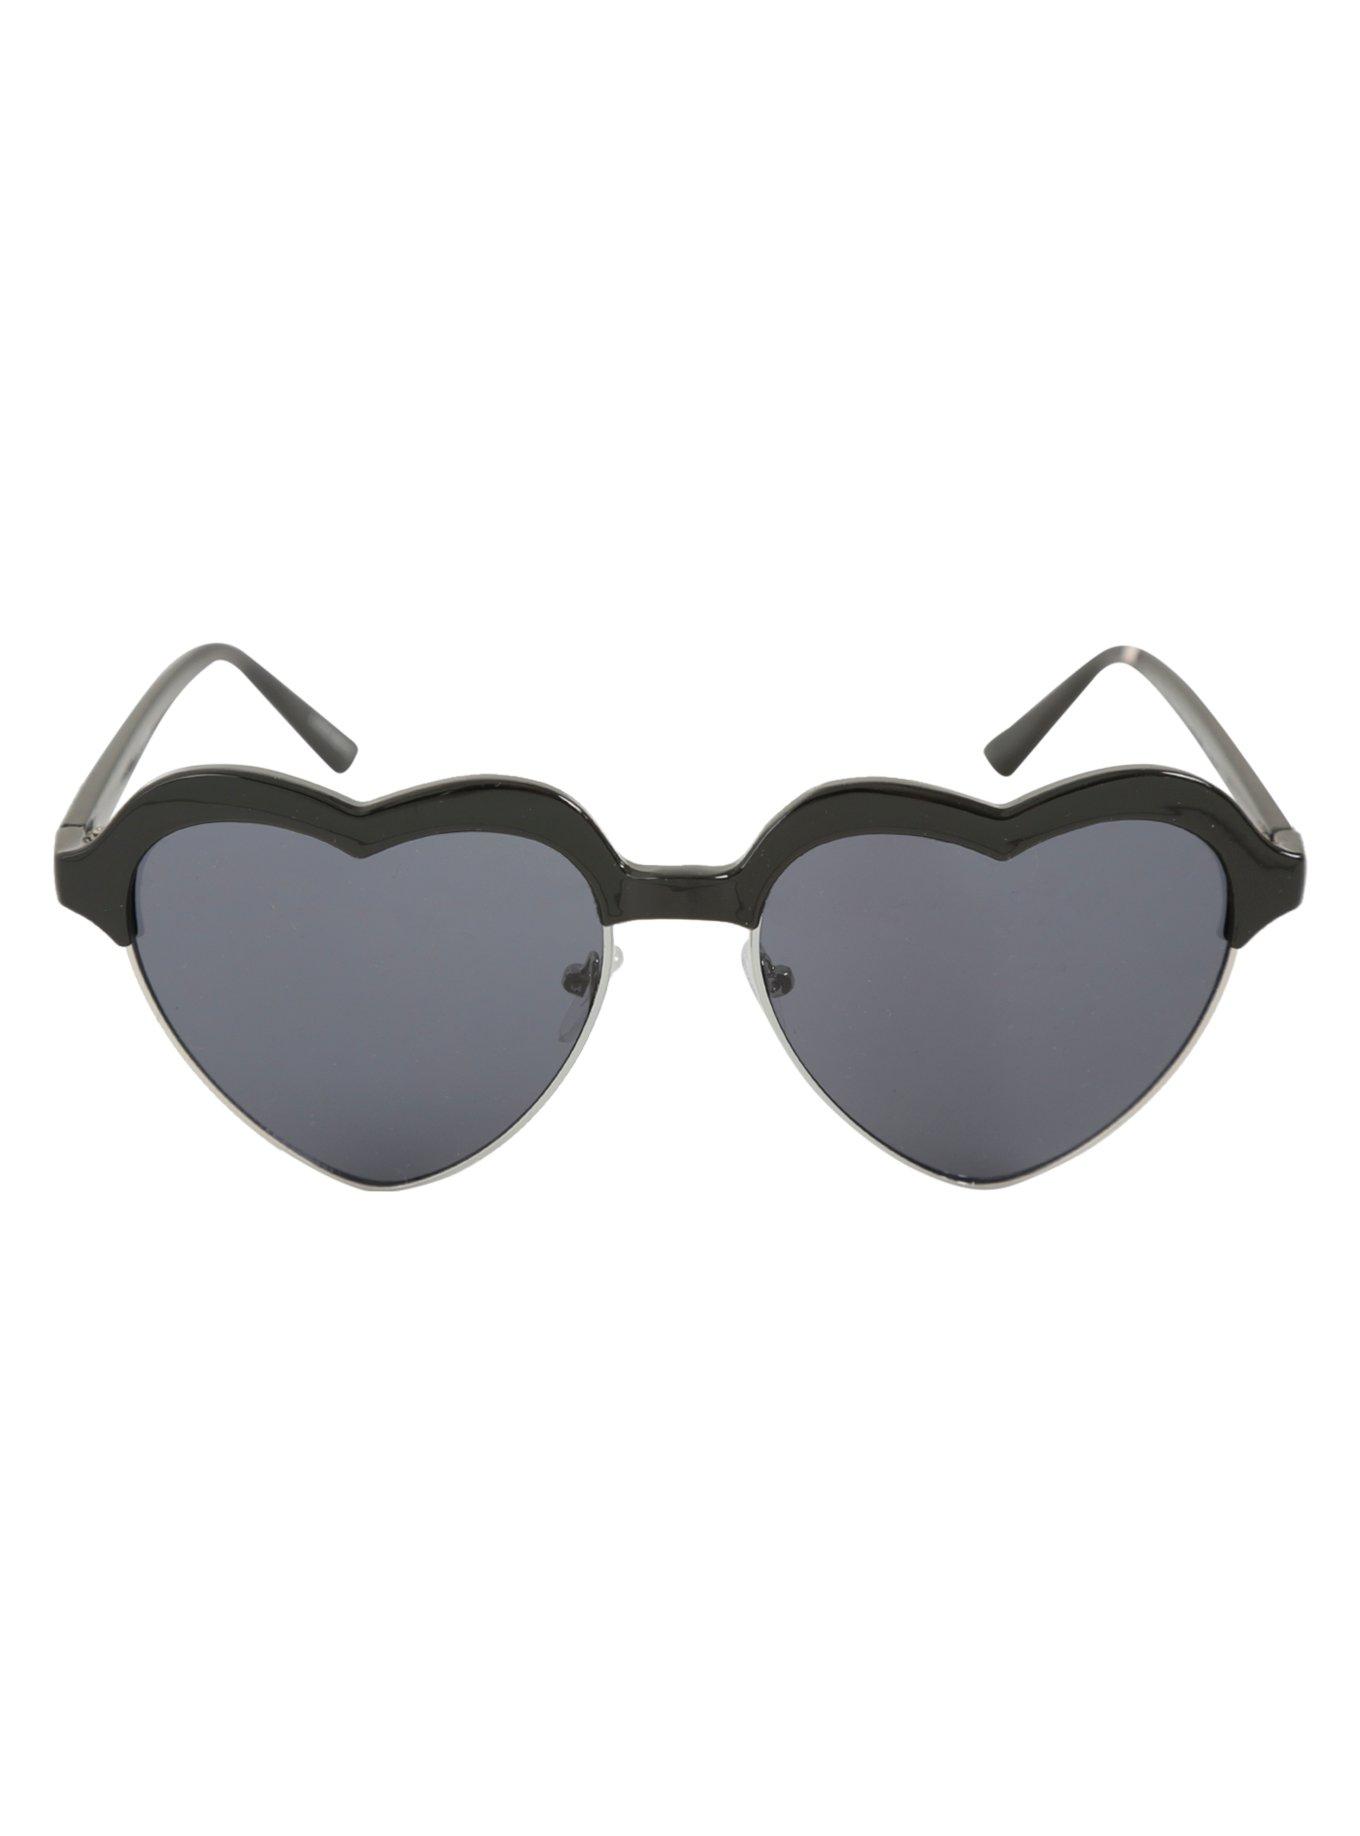 Matte Black Skull Heart Sunglasses, , alternate